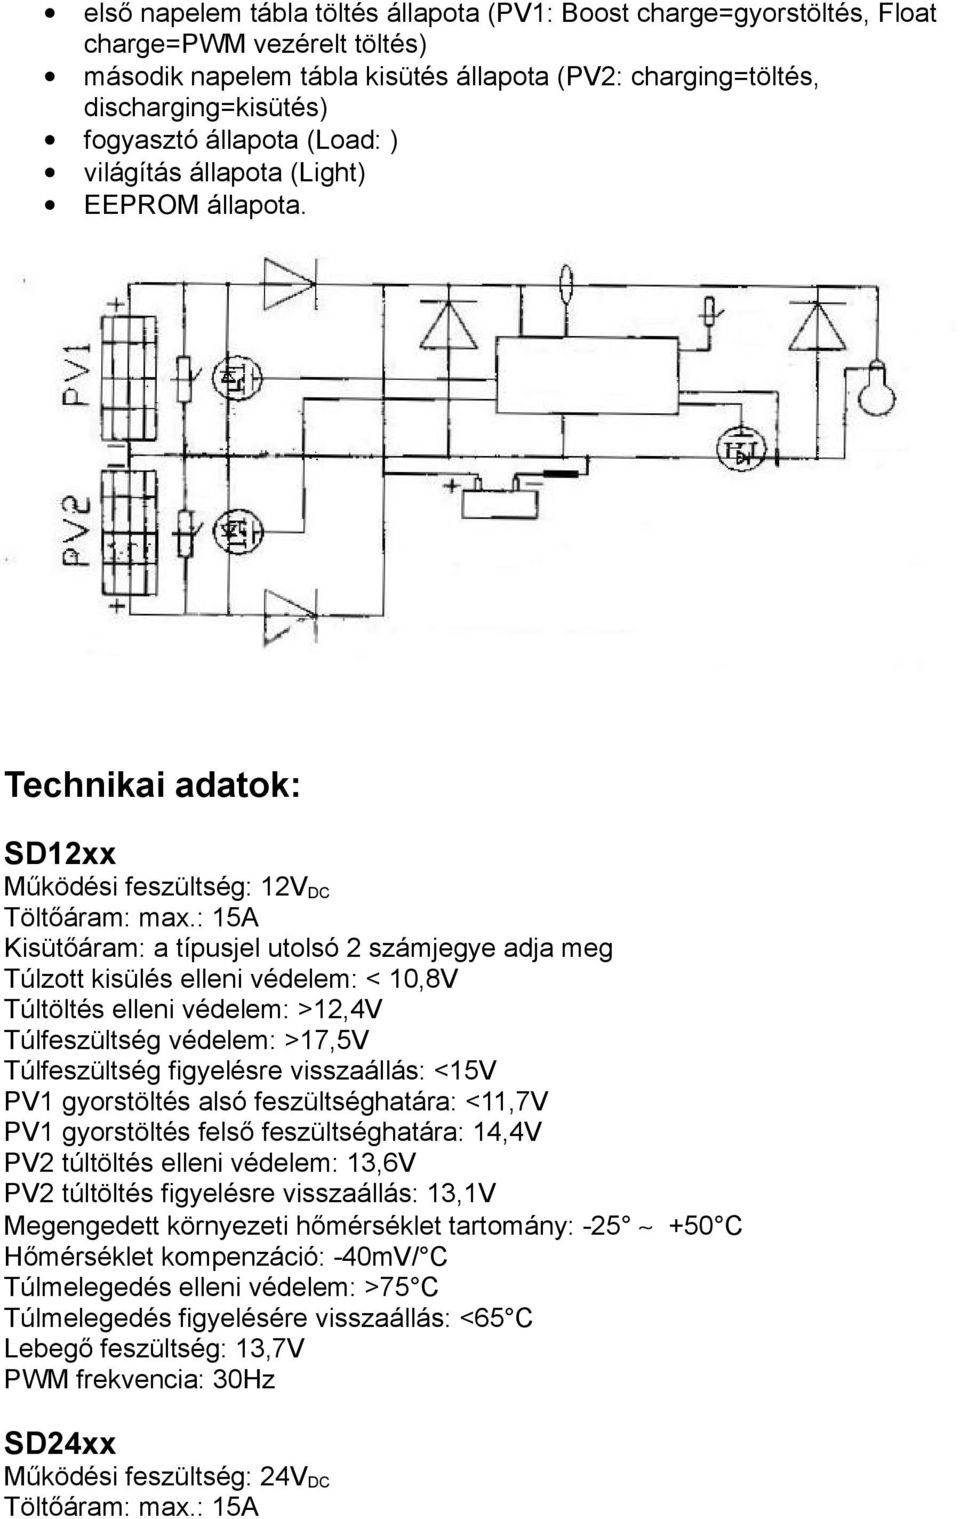 SD12xx SD24xx. napelem töltésvezérlő HASZNÁLATI UTASÍTÁS - PDF Free Download